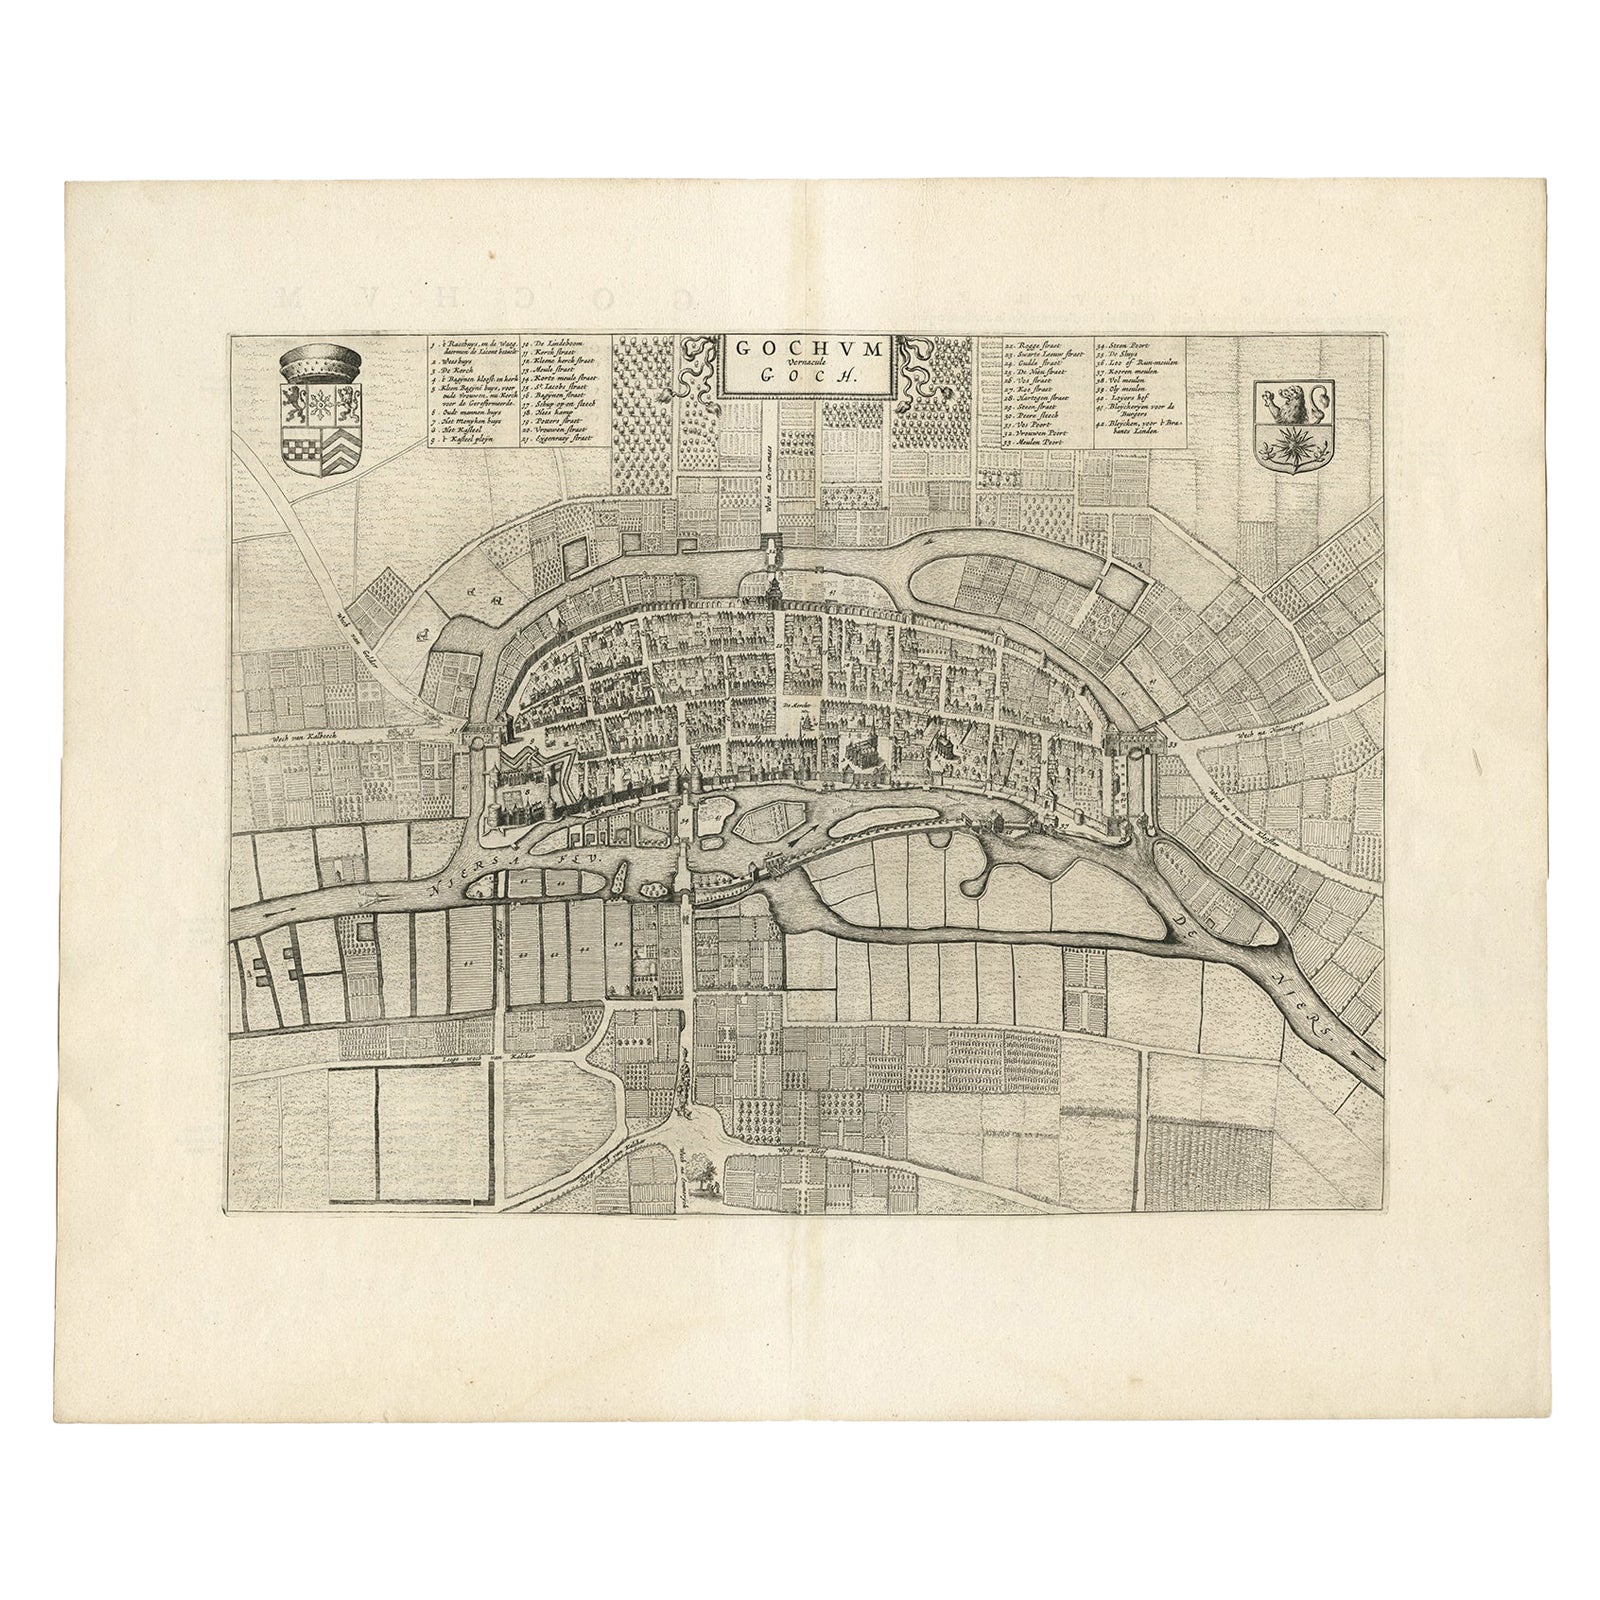 Carte ancienne de la ville de Goch par Blaeu, 1649